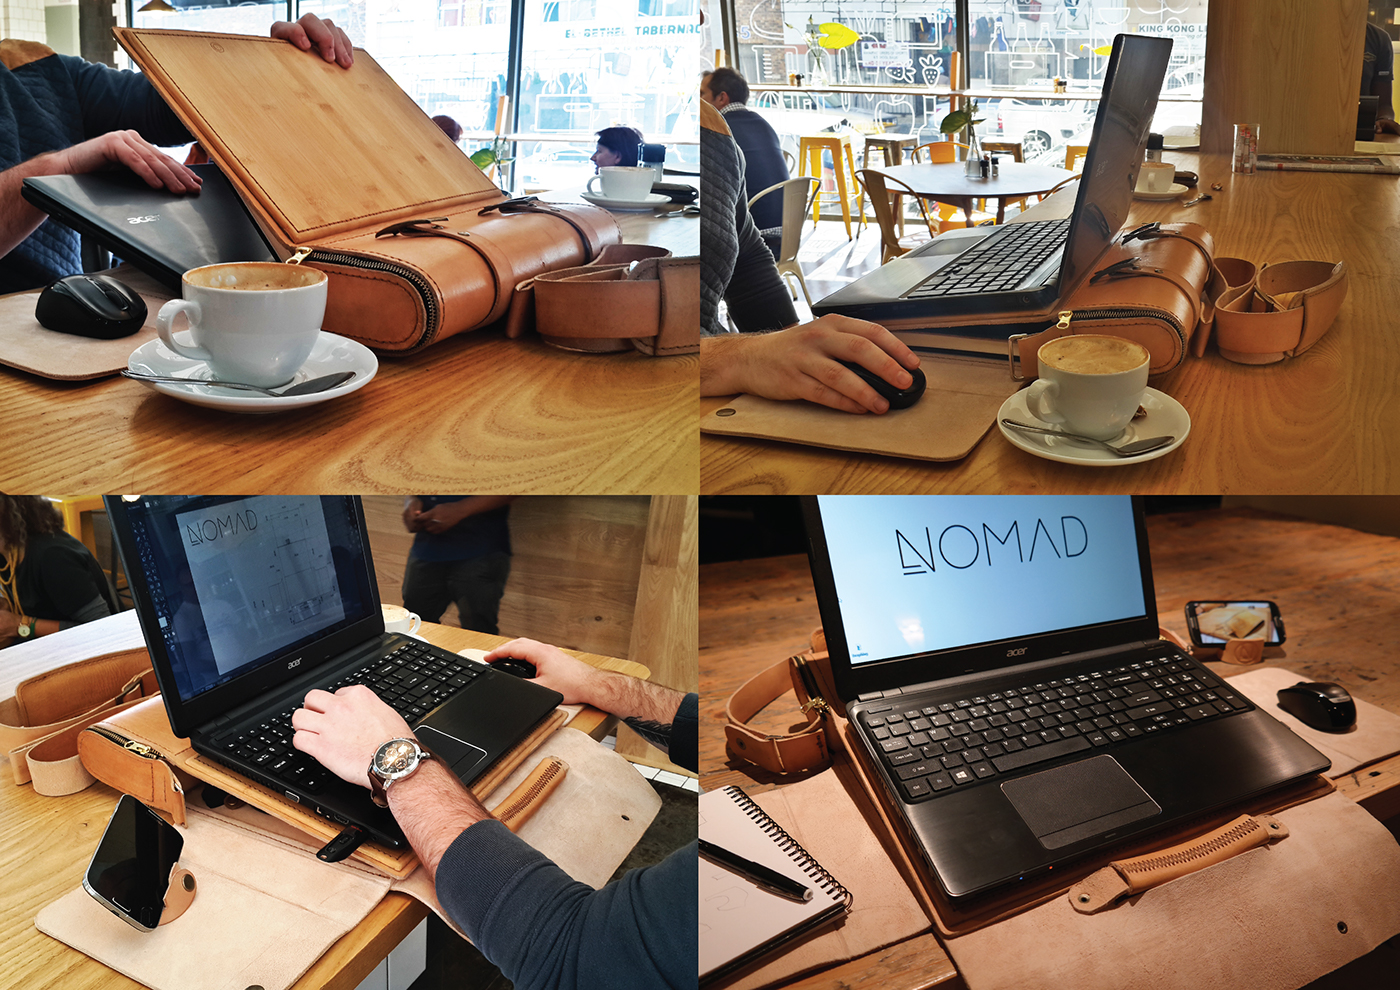 bag Laptop laptopbag leather leather bag portable Work  workstation